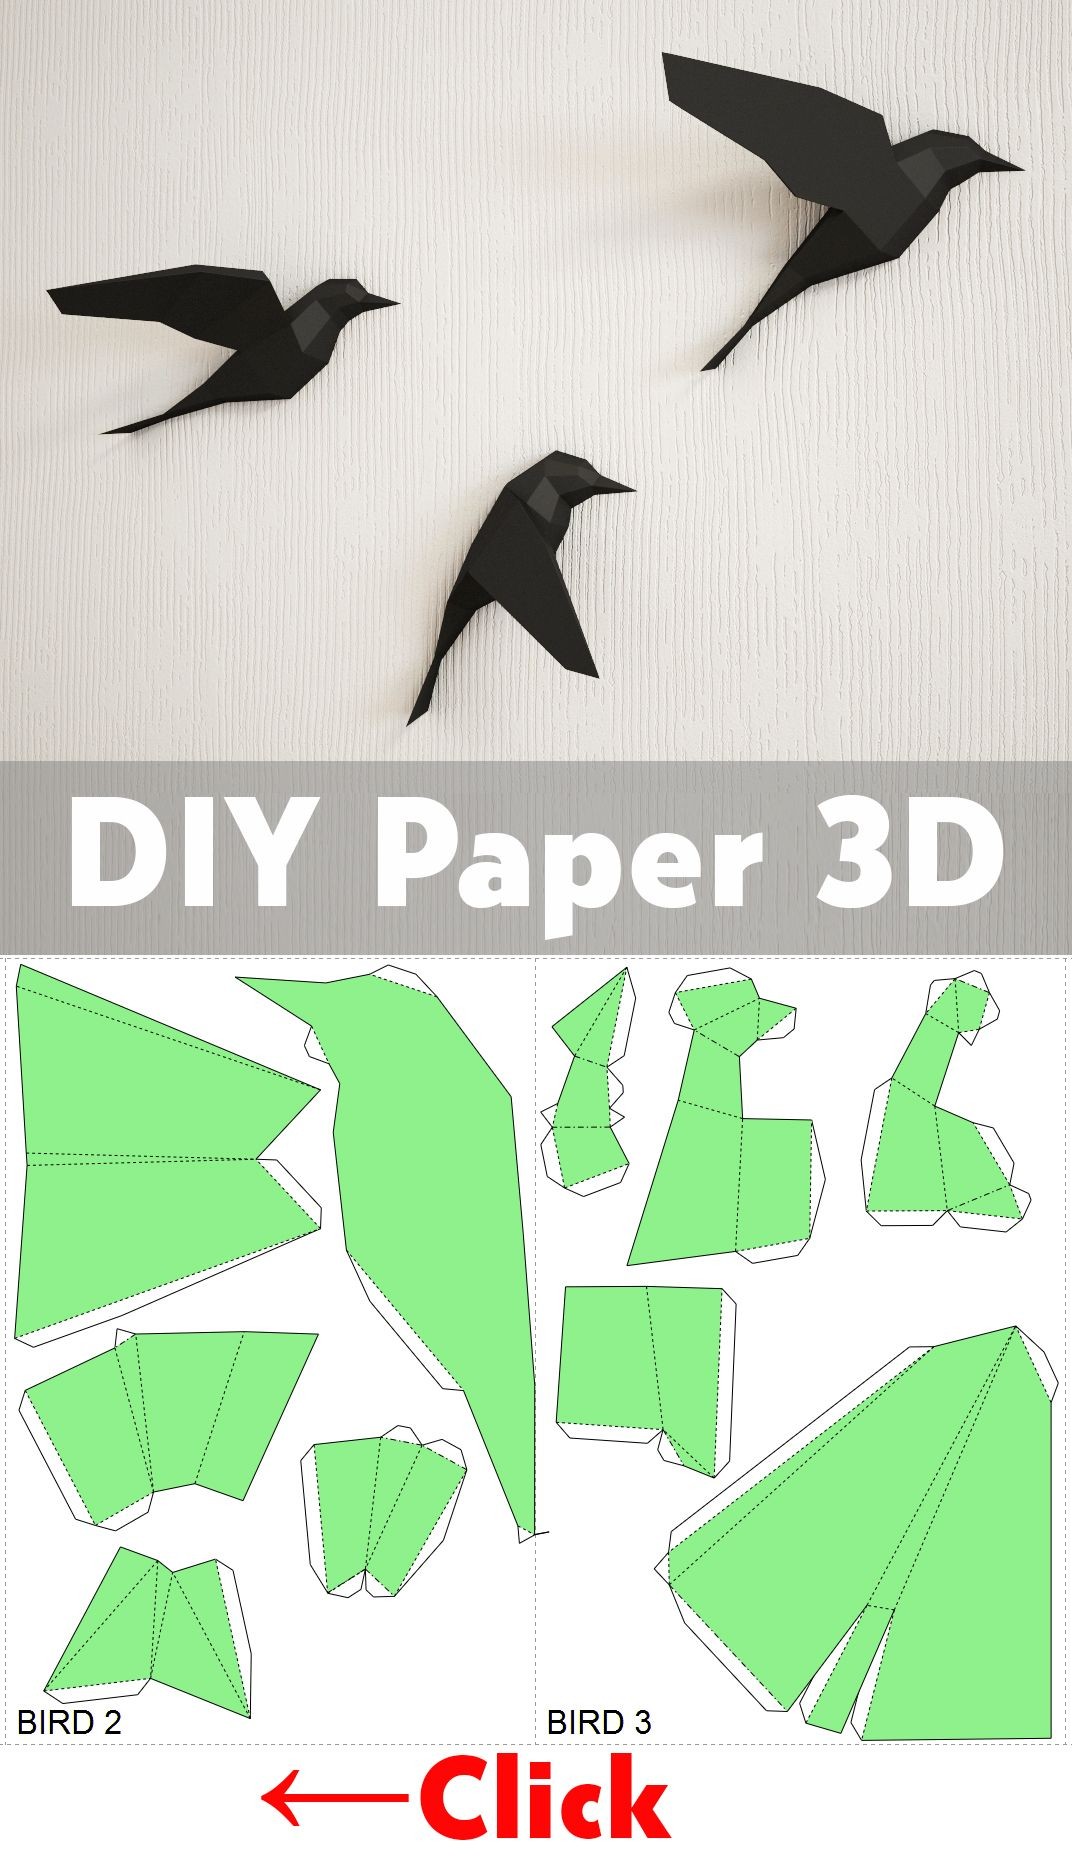 Papercraft 3d Model Diy Paper Birds On Wall 3d Papercraft Easy Paper Model Sculpture